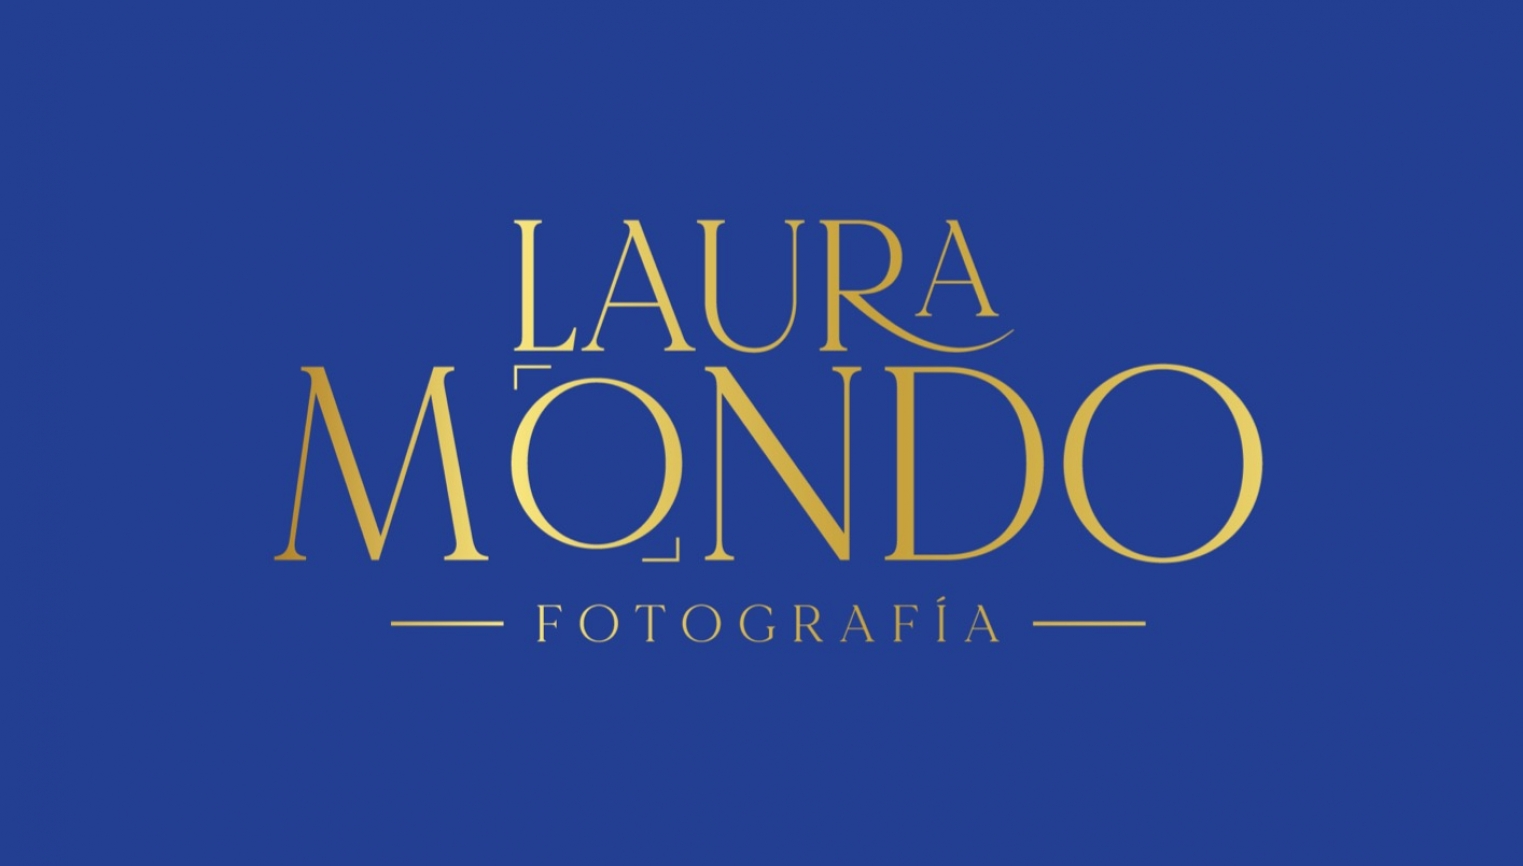 Laura Mondo Fotografía - foto 1/1